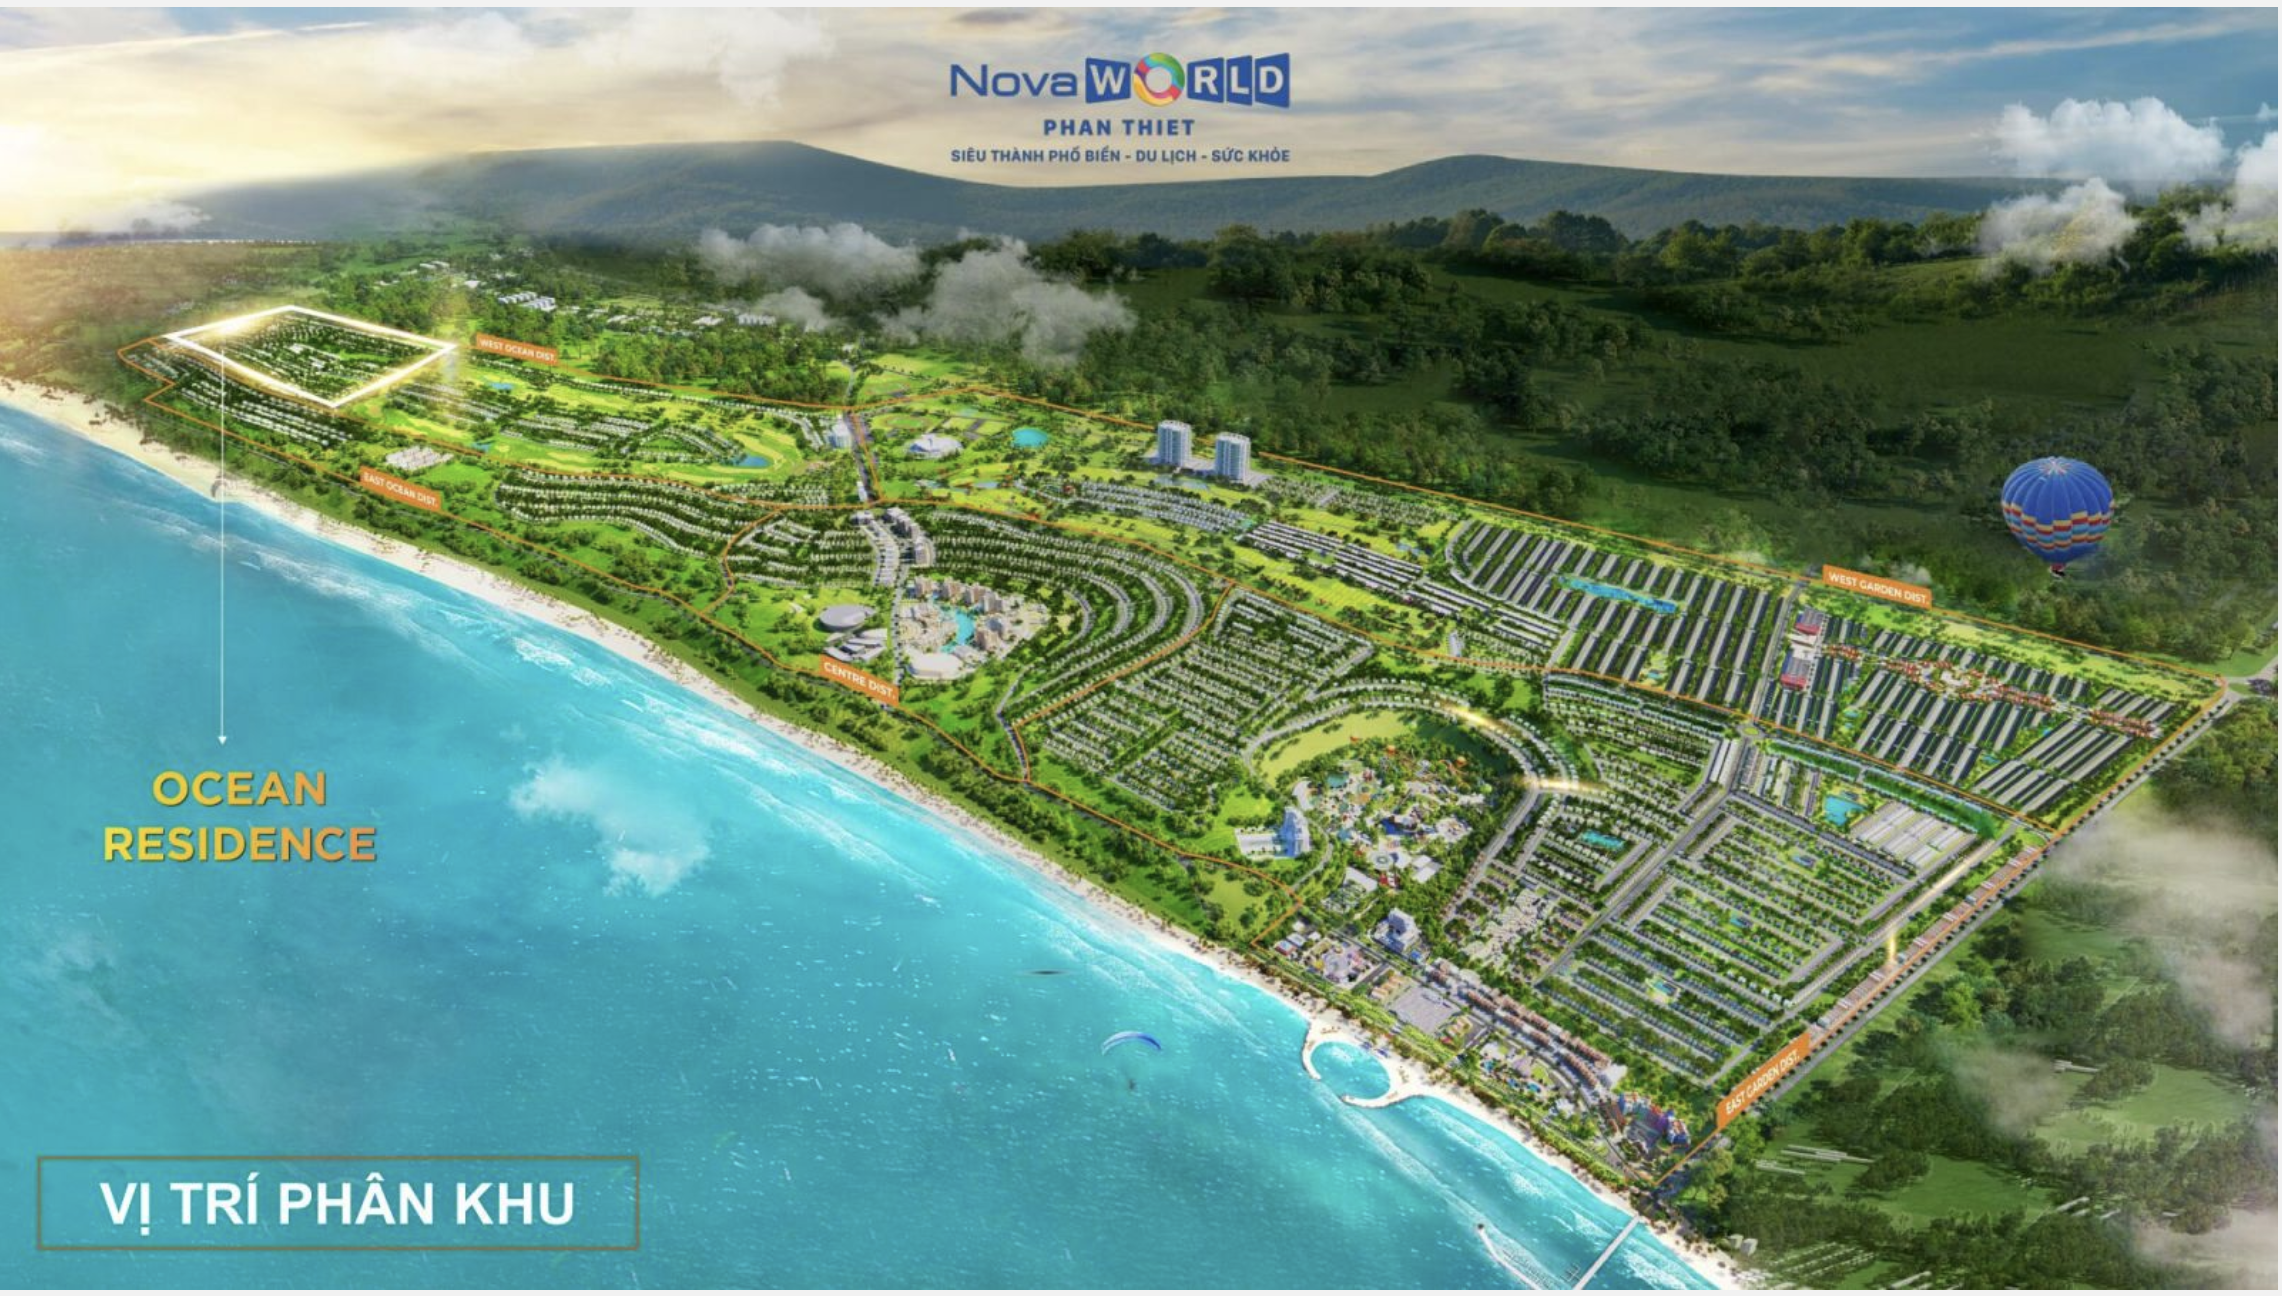 OCEAN RESIDENCE Novaworld Phan Thiết - An nhàn đầu tư - An cư thịnh vượng 8